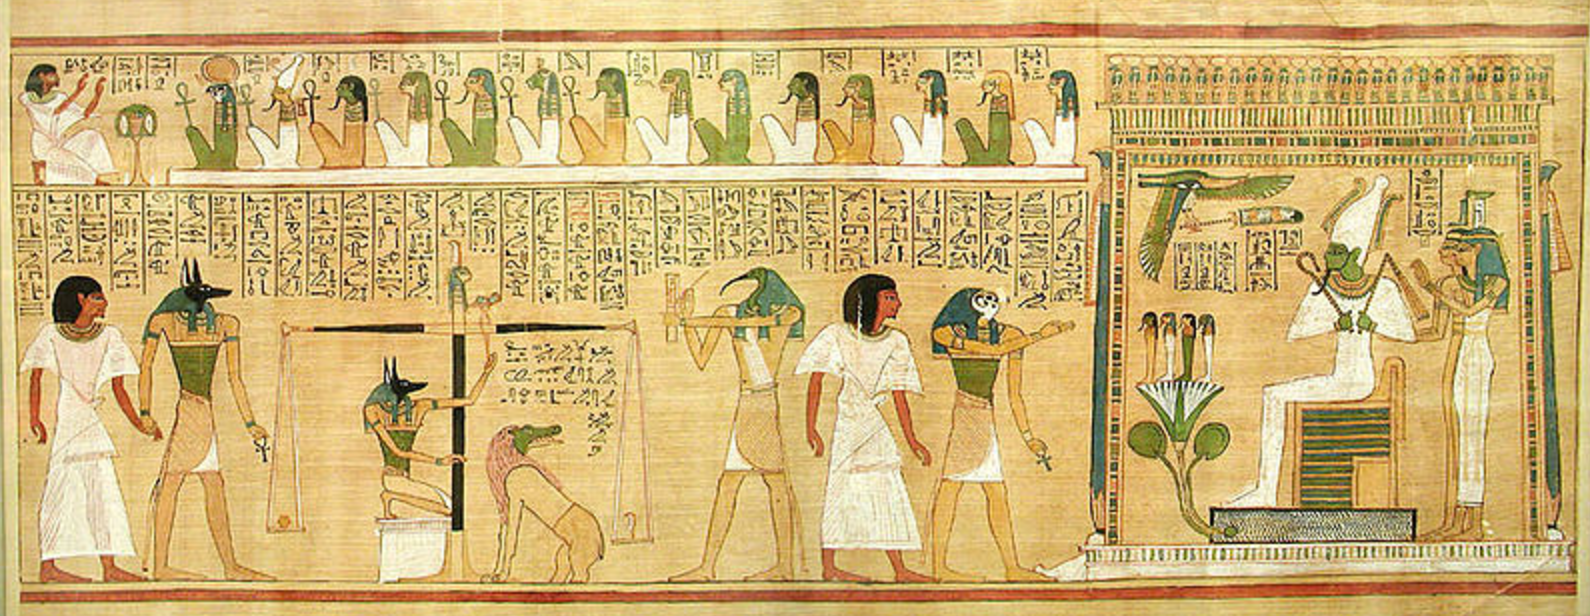 En Egypte des hiéroglyphe vieux de 5200 ans ont été découverts